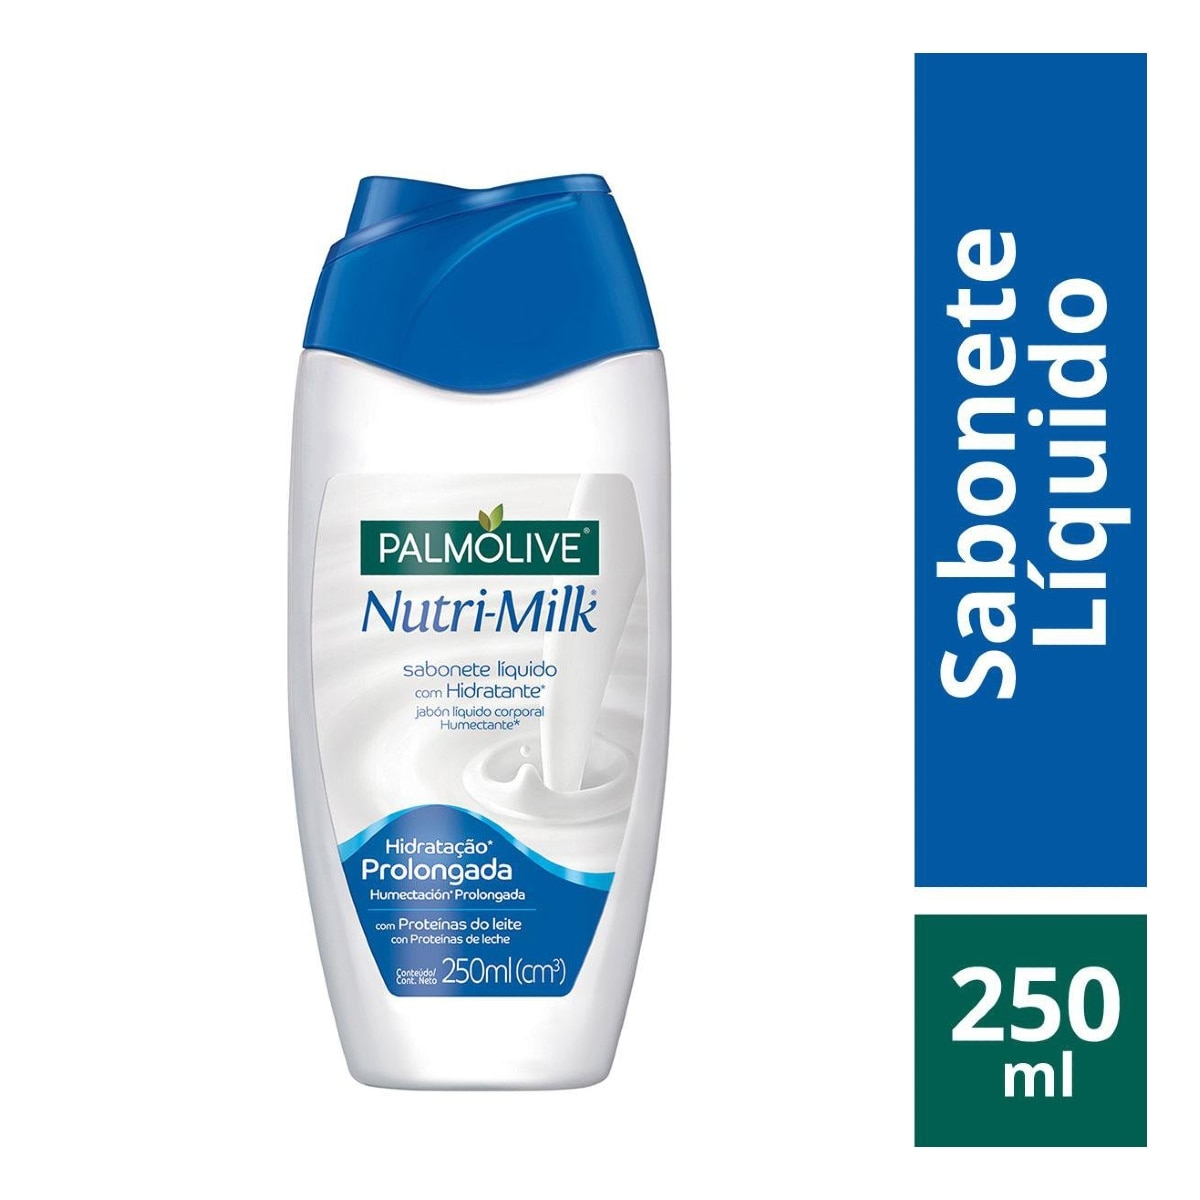 Sabonete Liquido Palmolive Nutri-Milk com Hidratante 250ml